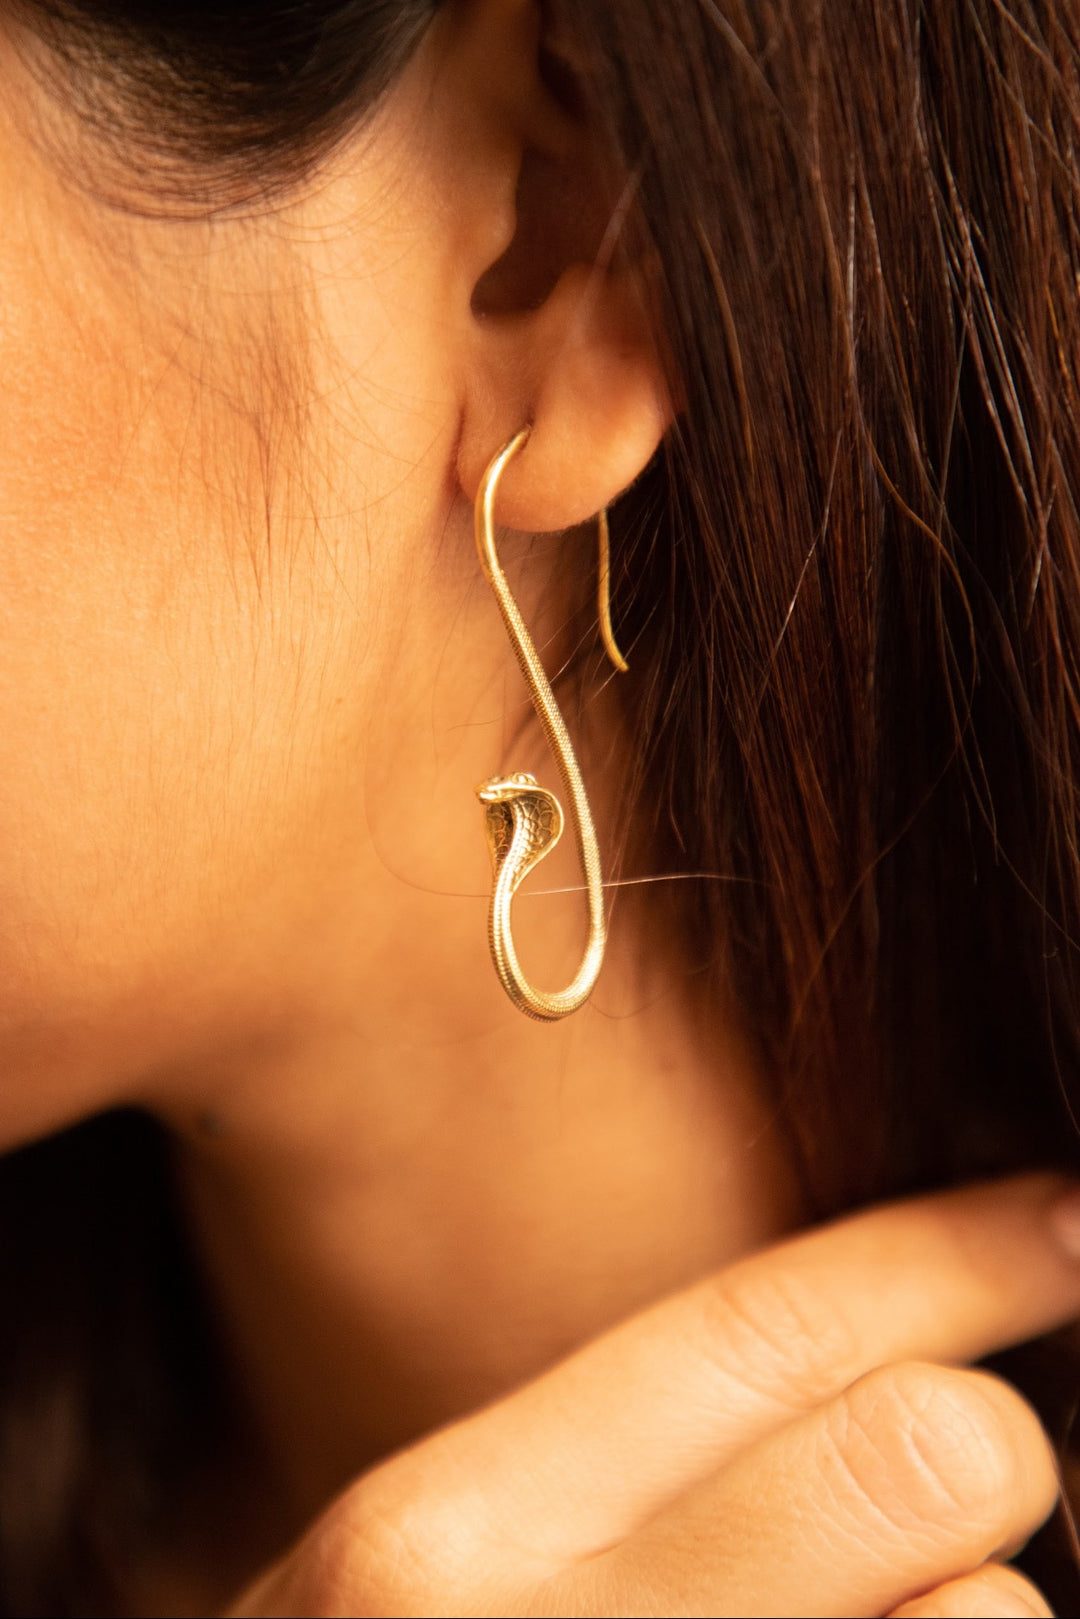 Buy Dreamcatcher Earrings Online in India – Soul Works –